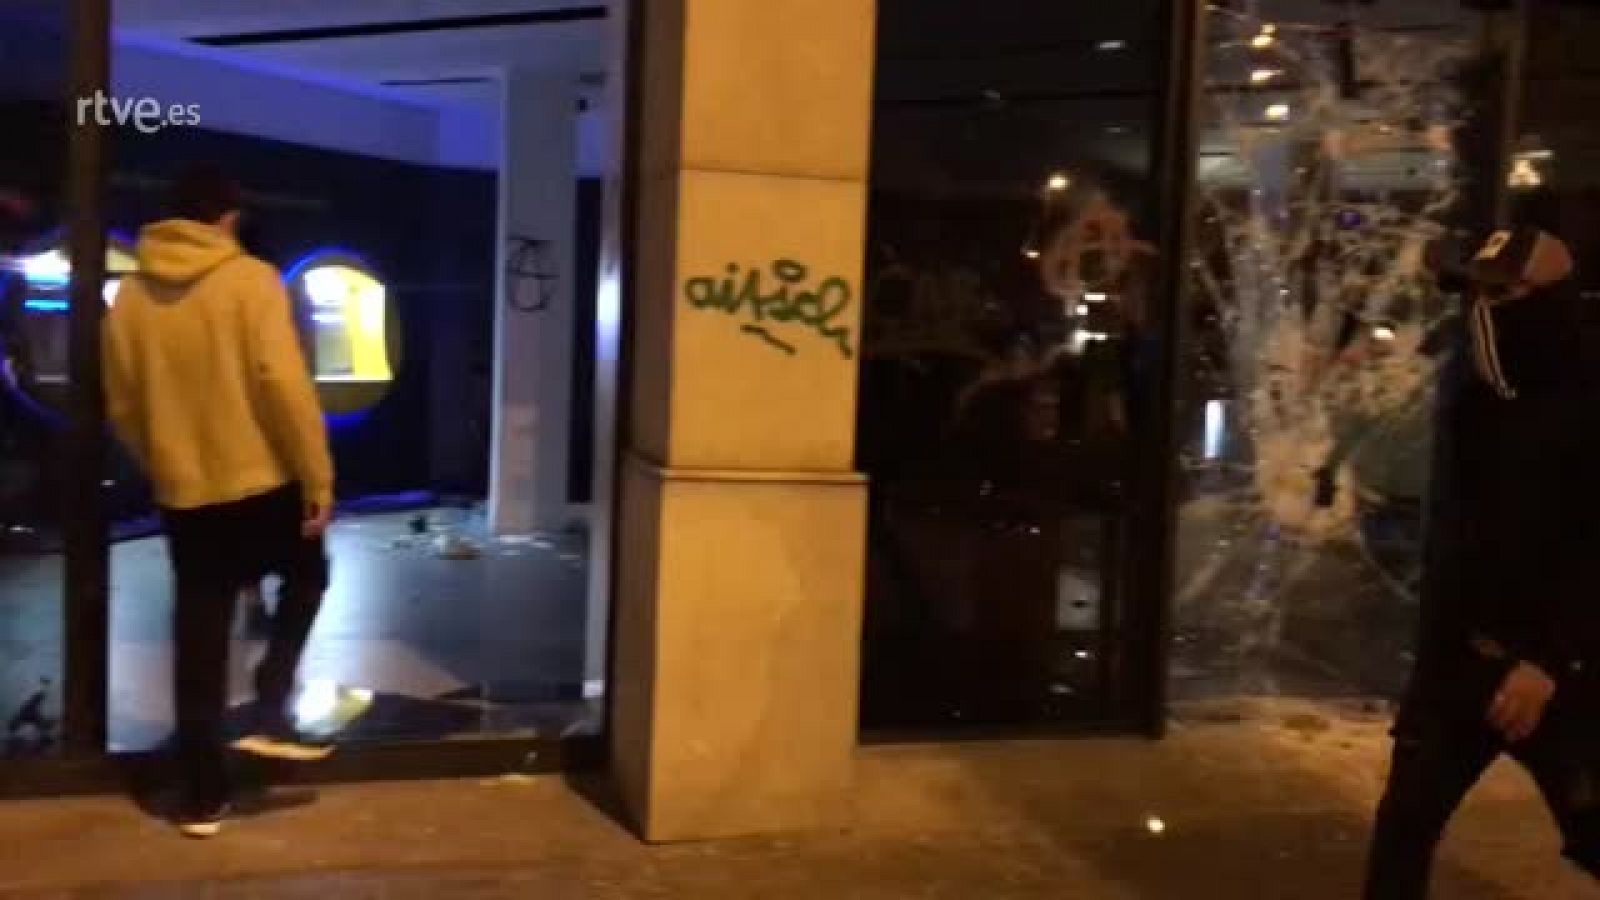 Una sucursal de la Caixa destrozada por los violentos en Barcelona -RTVE.es